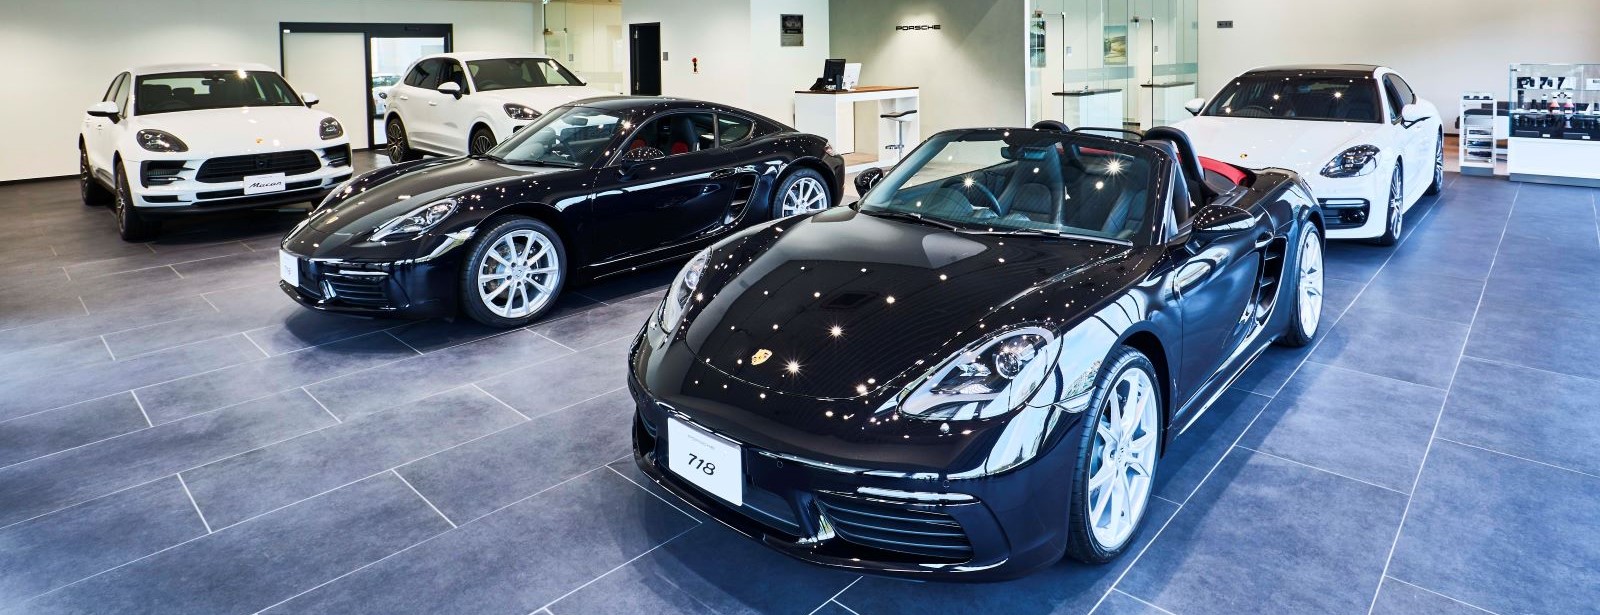 Porsche Center Chiba.